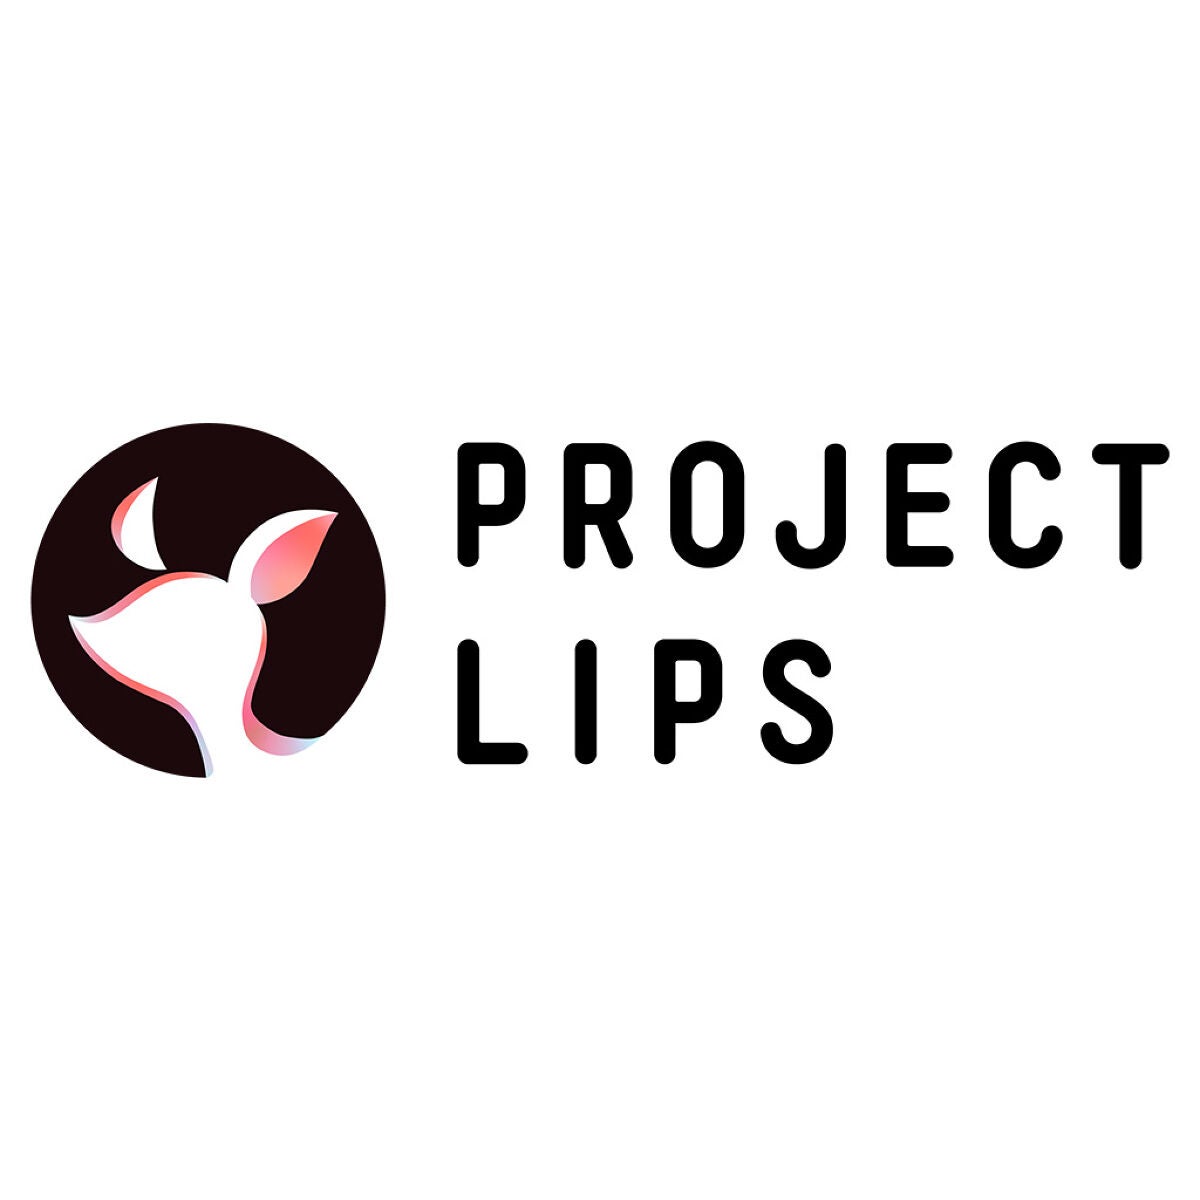 一緒にLIPSをもっと盛り上げませんか？「Project LIPS」はじめます♡のサムネイル